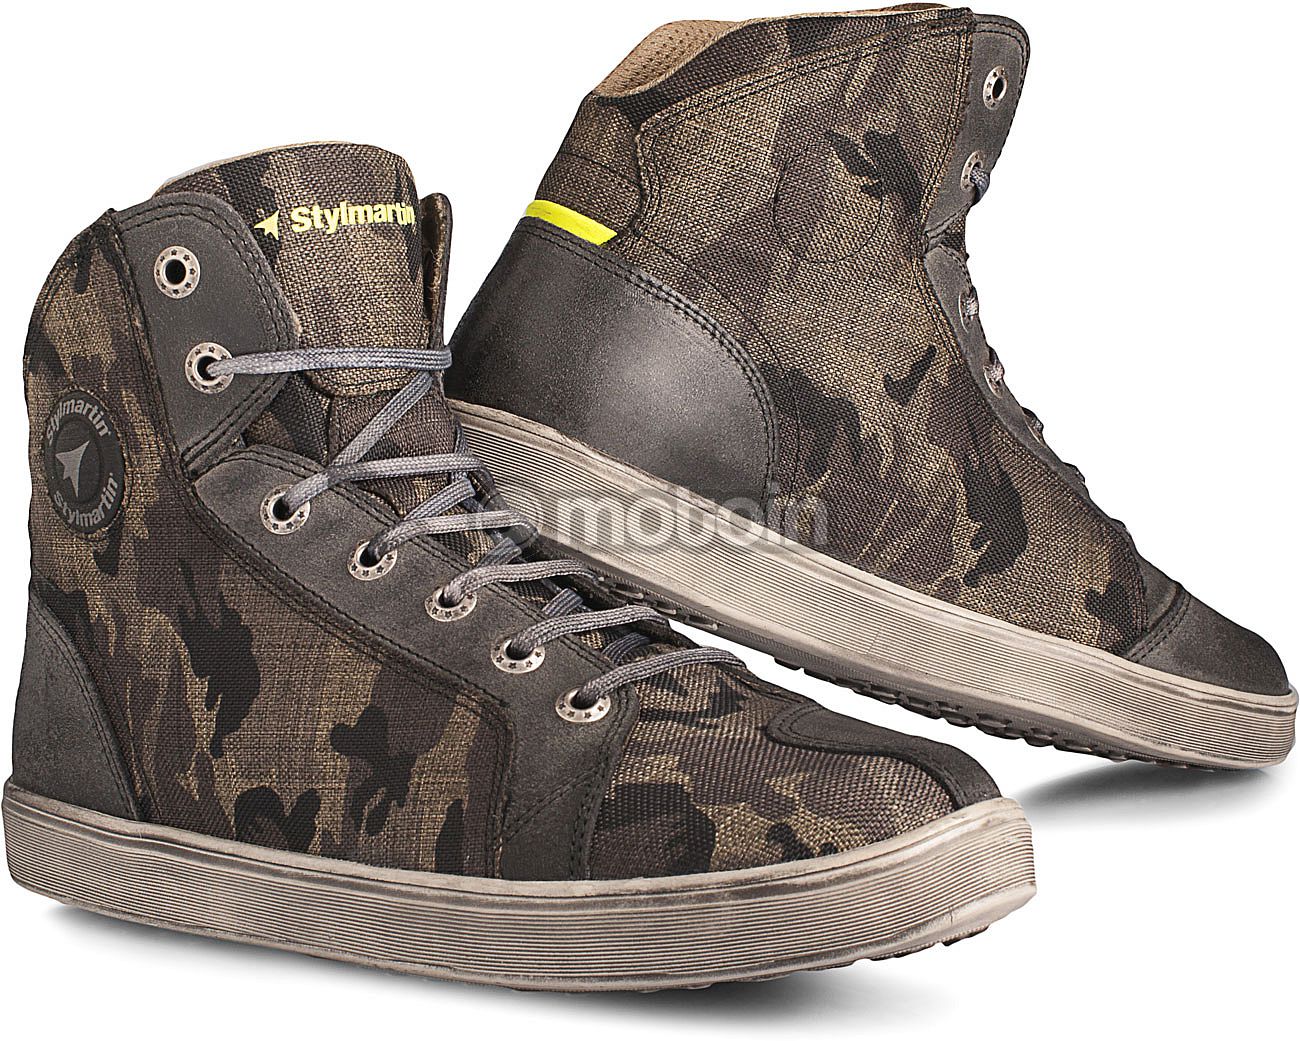 Stylmartin Raptor Evo, zapatos impermeables